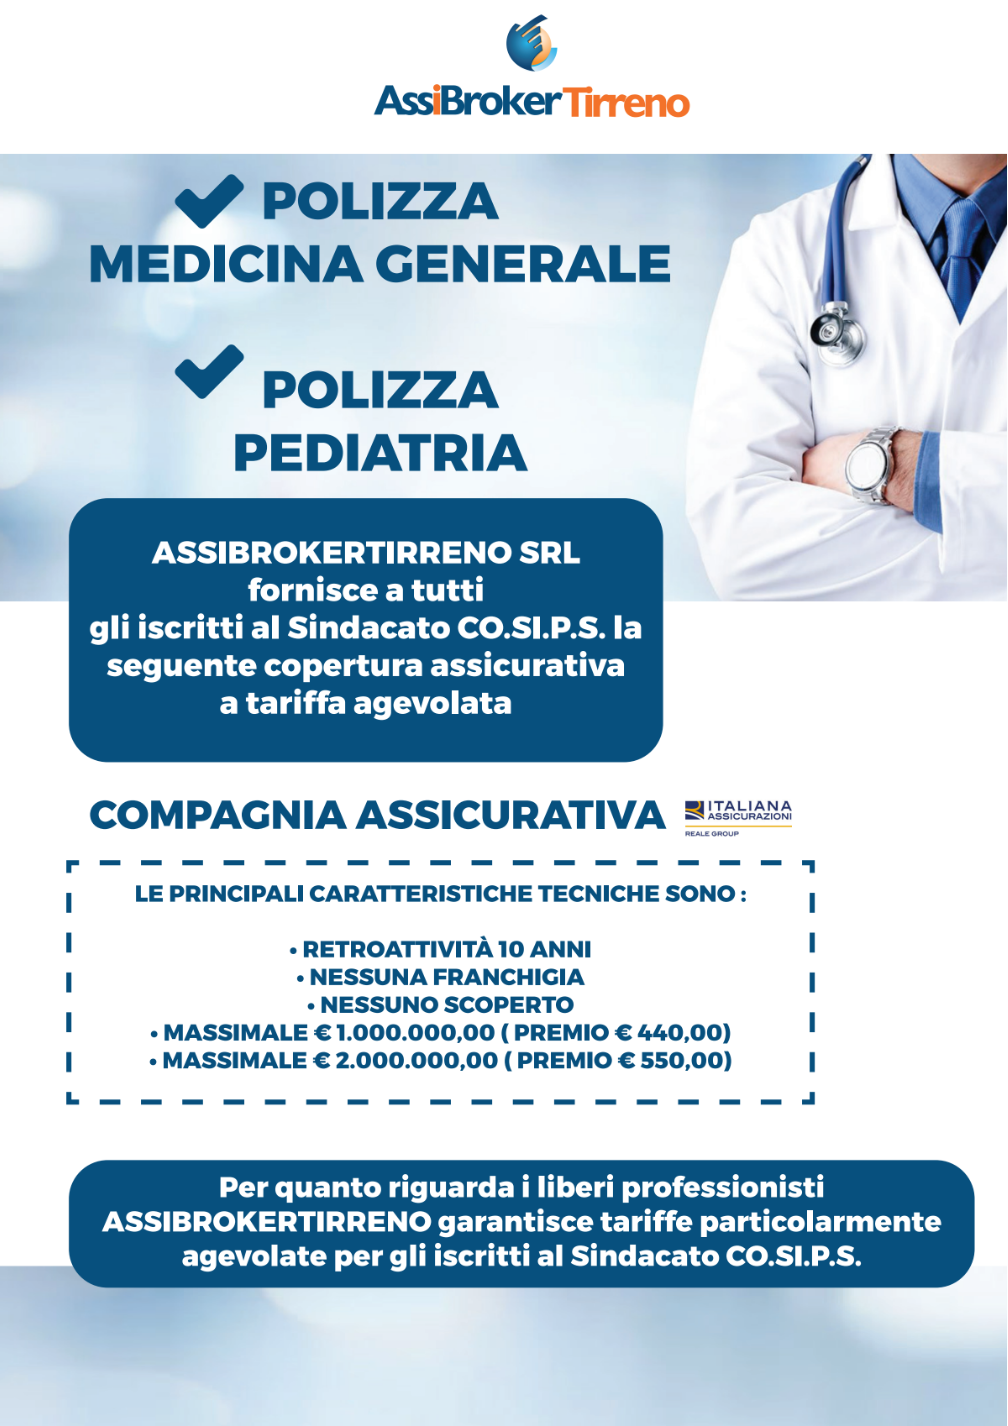 Convenzione Cosips - AssiBrokerTirreno - Polizza Medicina Generale e Pediatria